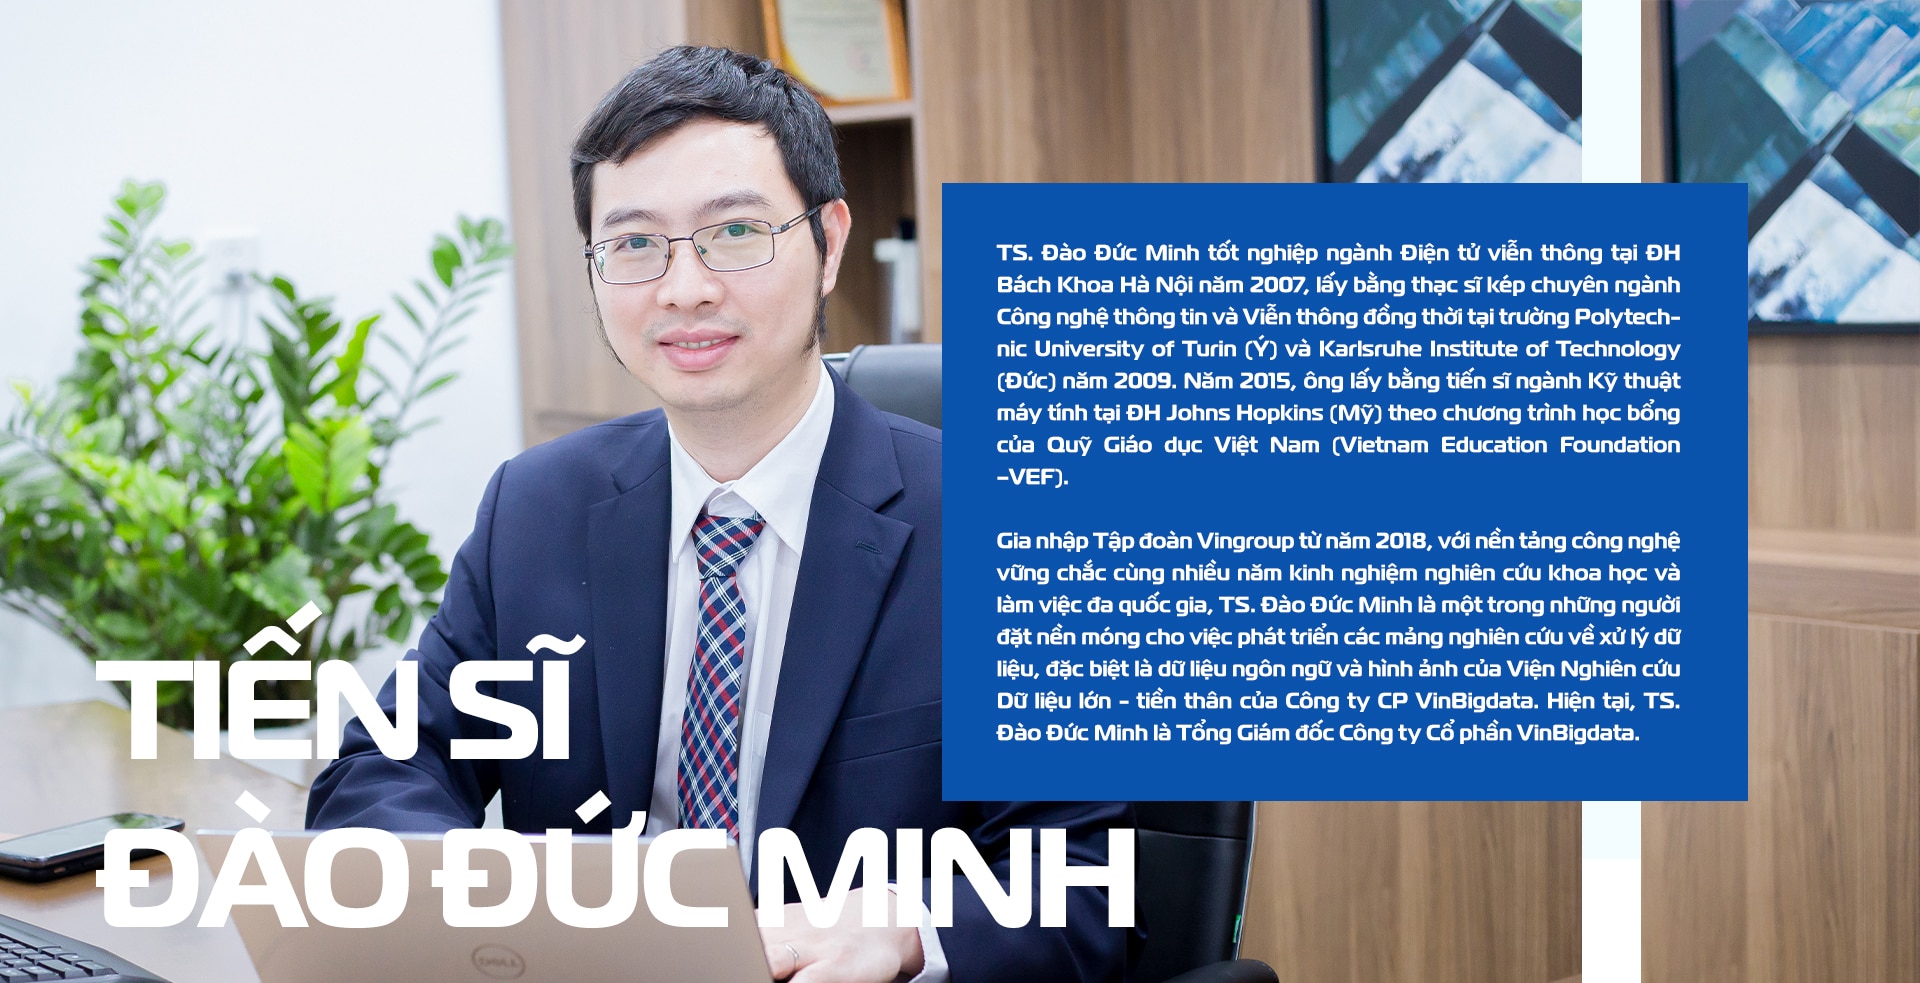 TS Đào Đức Minh: 'Làm chủ dữ liệu Việt là bước đầu phát triển và nắm giữ công nghệ Việt'- Ảnh 3.